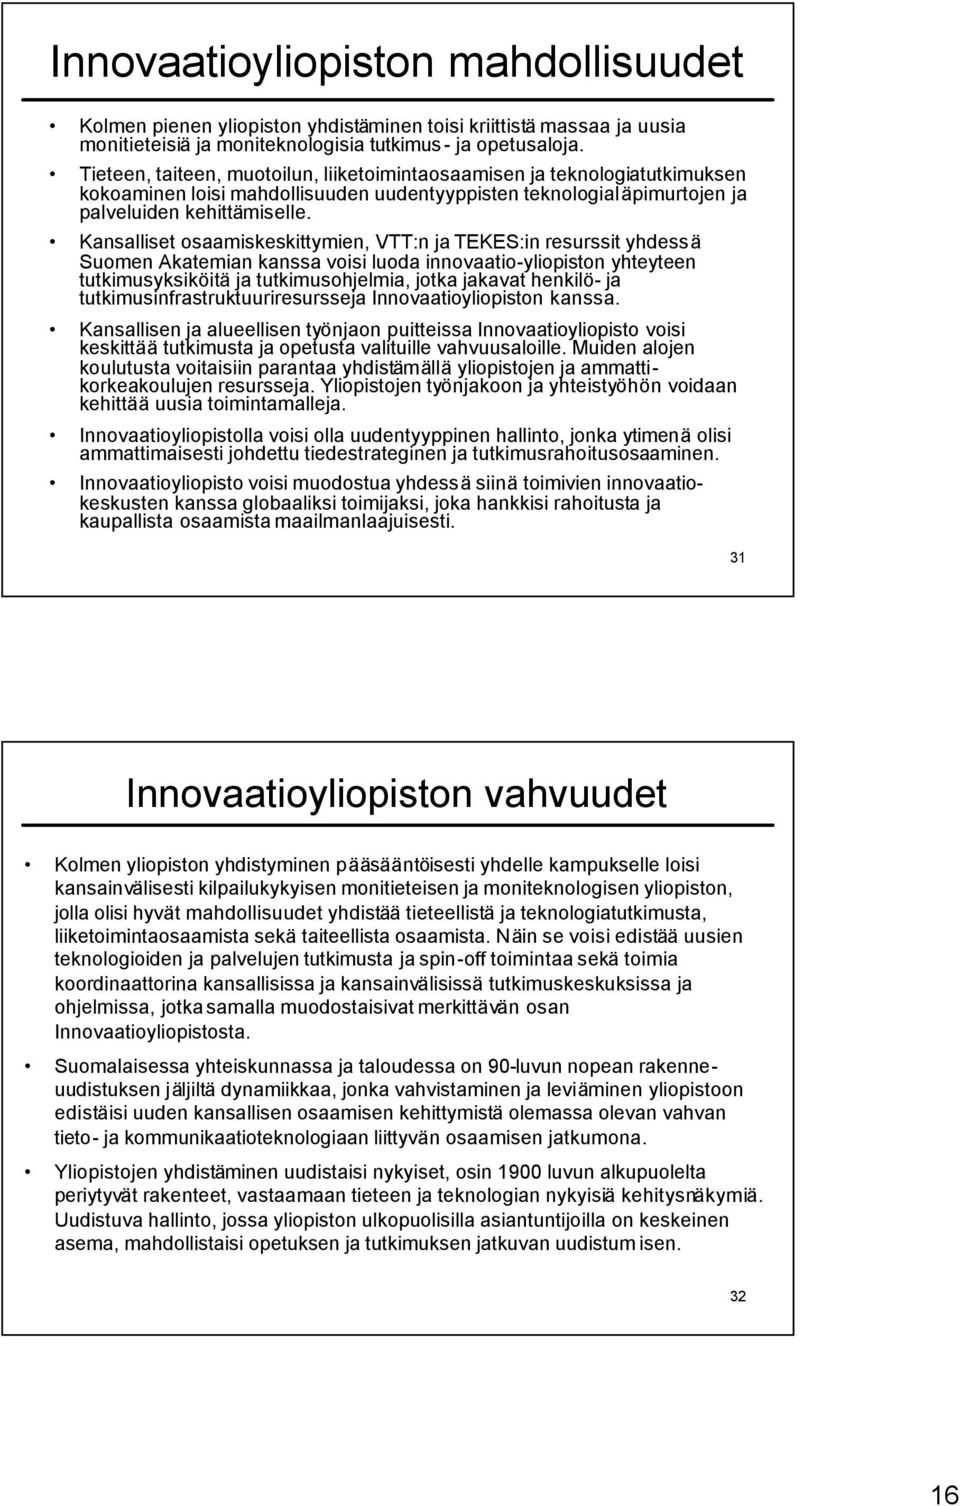 Kansalliset osaamiskeskittymien, VTT:n ja TEKES:in resurssit yhdessä Suomen Akatemian kanssa voisi luoda innovaatio-yliopiston yhteyteen tutkimusyksiköitä ja tutkimusohjelmia, jotka jakavat henkilö-